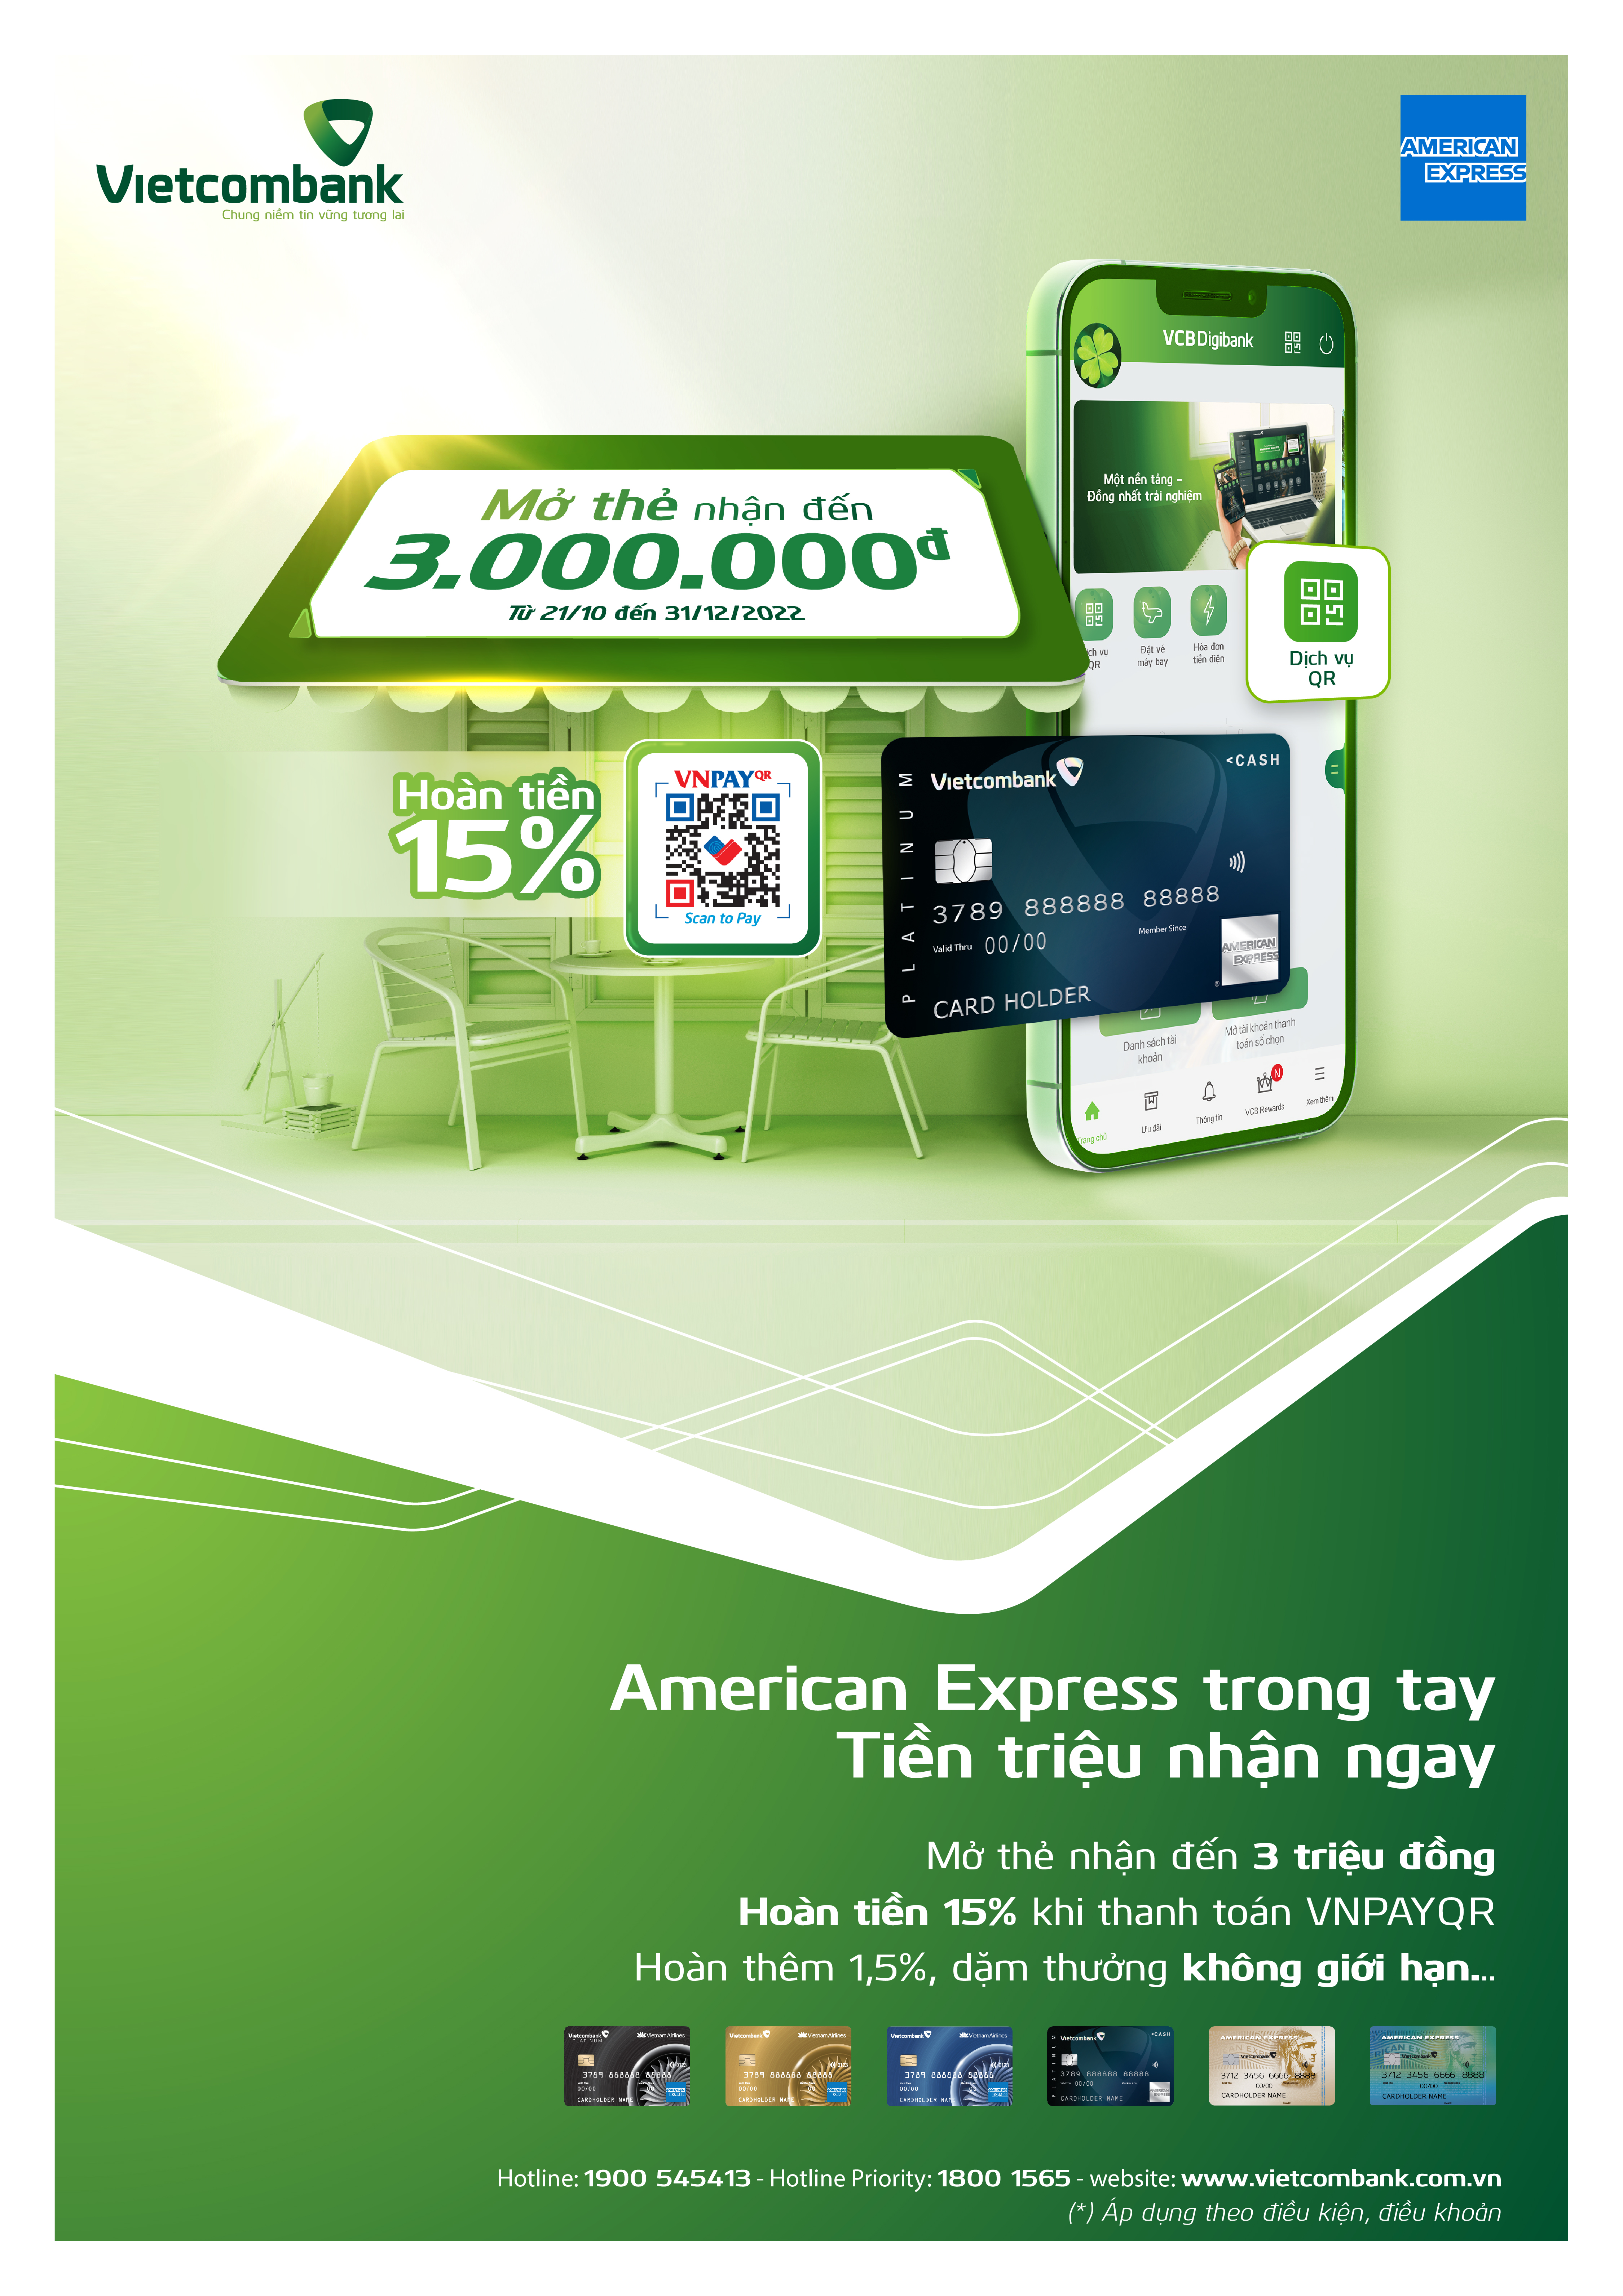 Nhiều ưu đãi cùng thẻ Vietcombank American Express  - Ảnh 1